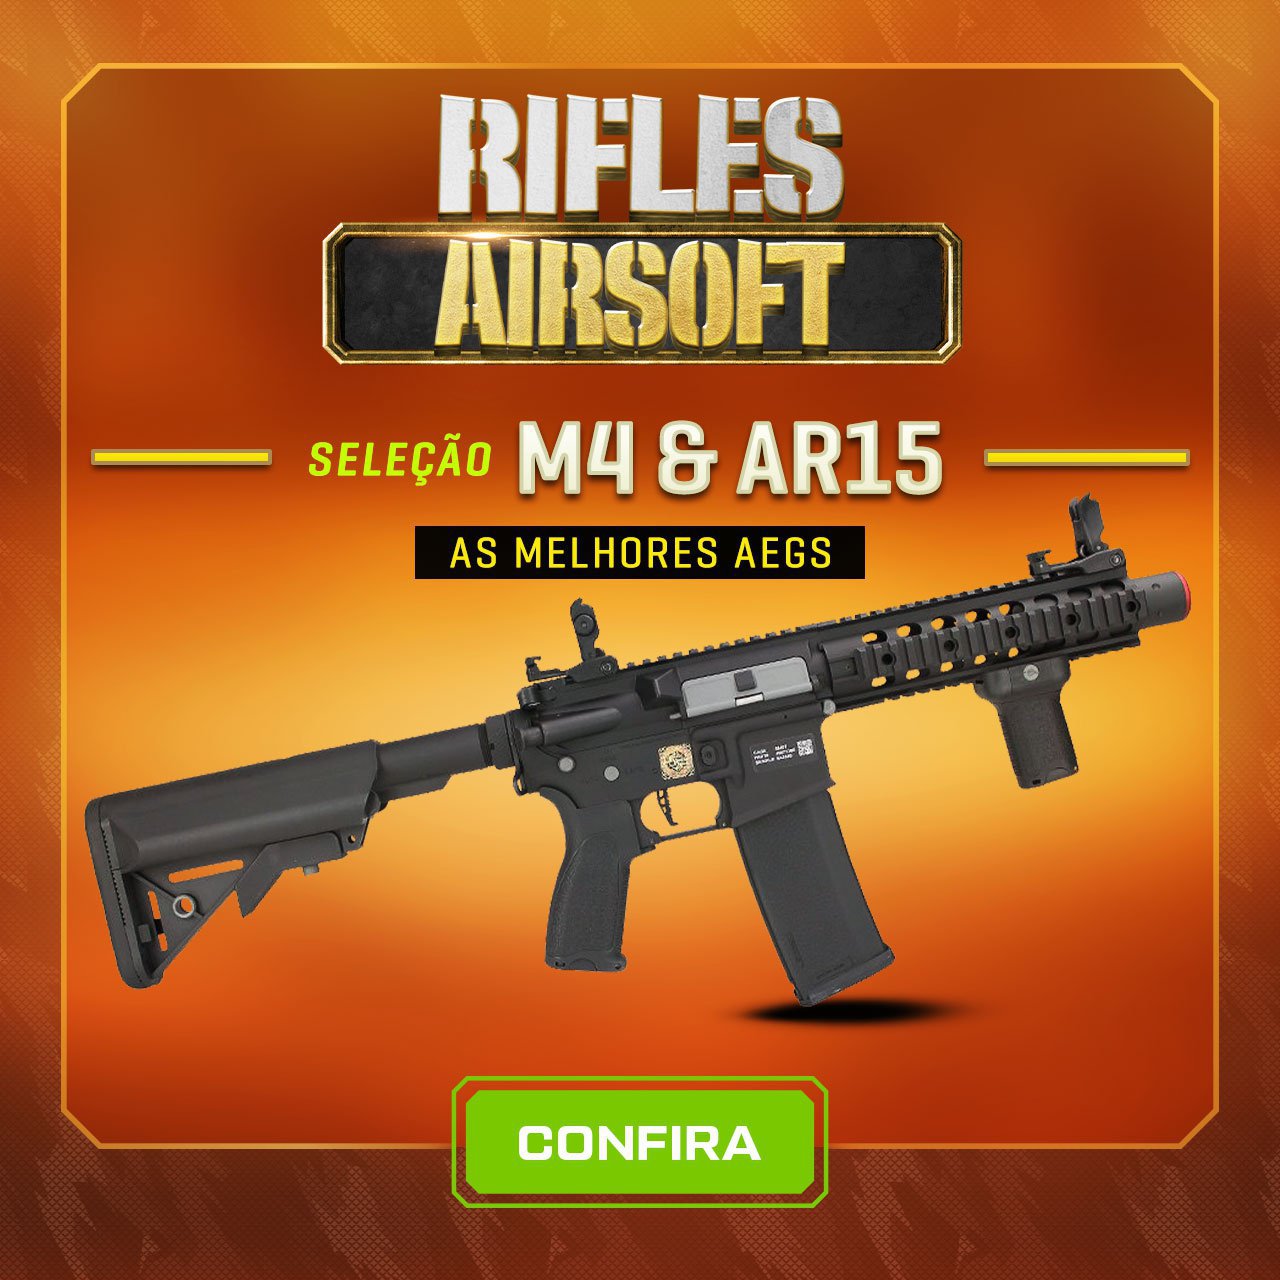 Rifles Airsoft - Seleção M4 & AR15, as melhores AEGs